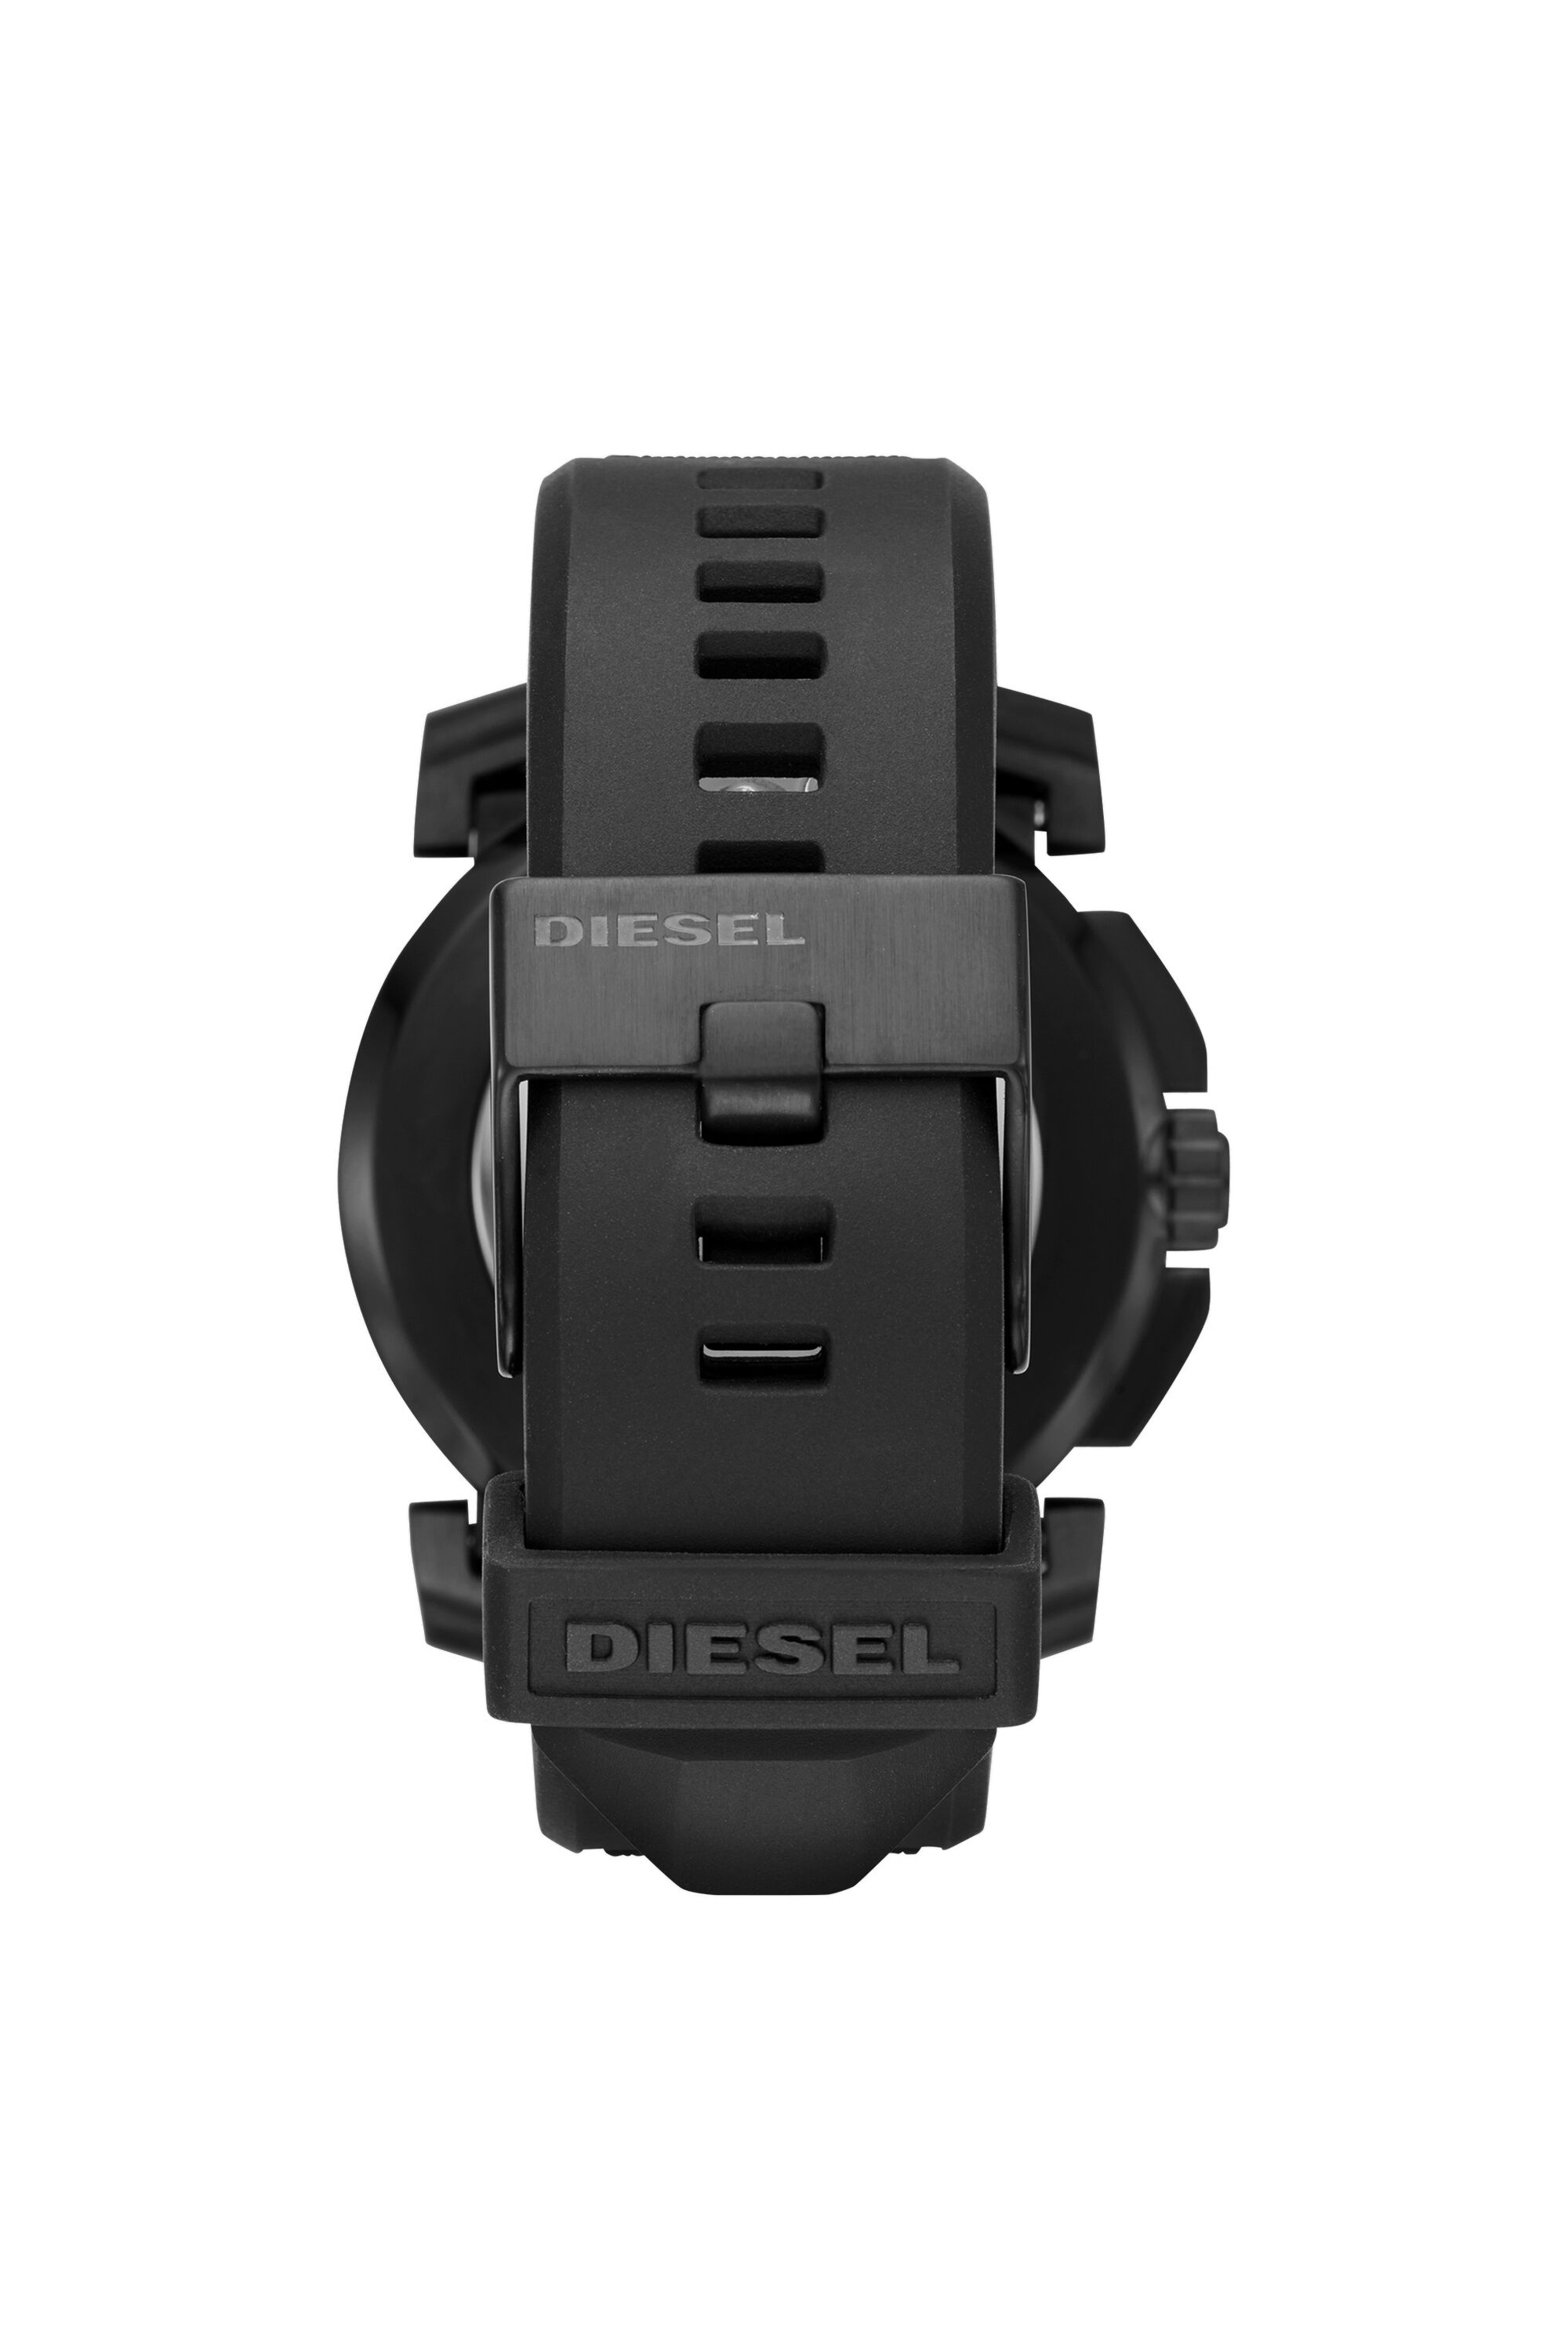 Diesel - DT1006, Black - Image 2